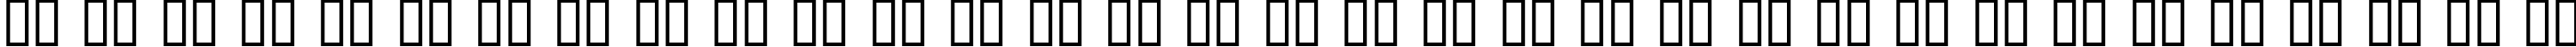 Пример написания русского алфавита шрифтом Sideshow